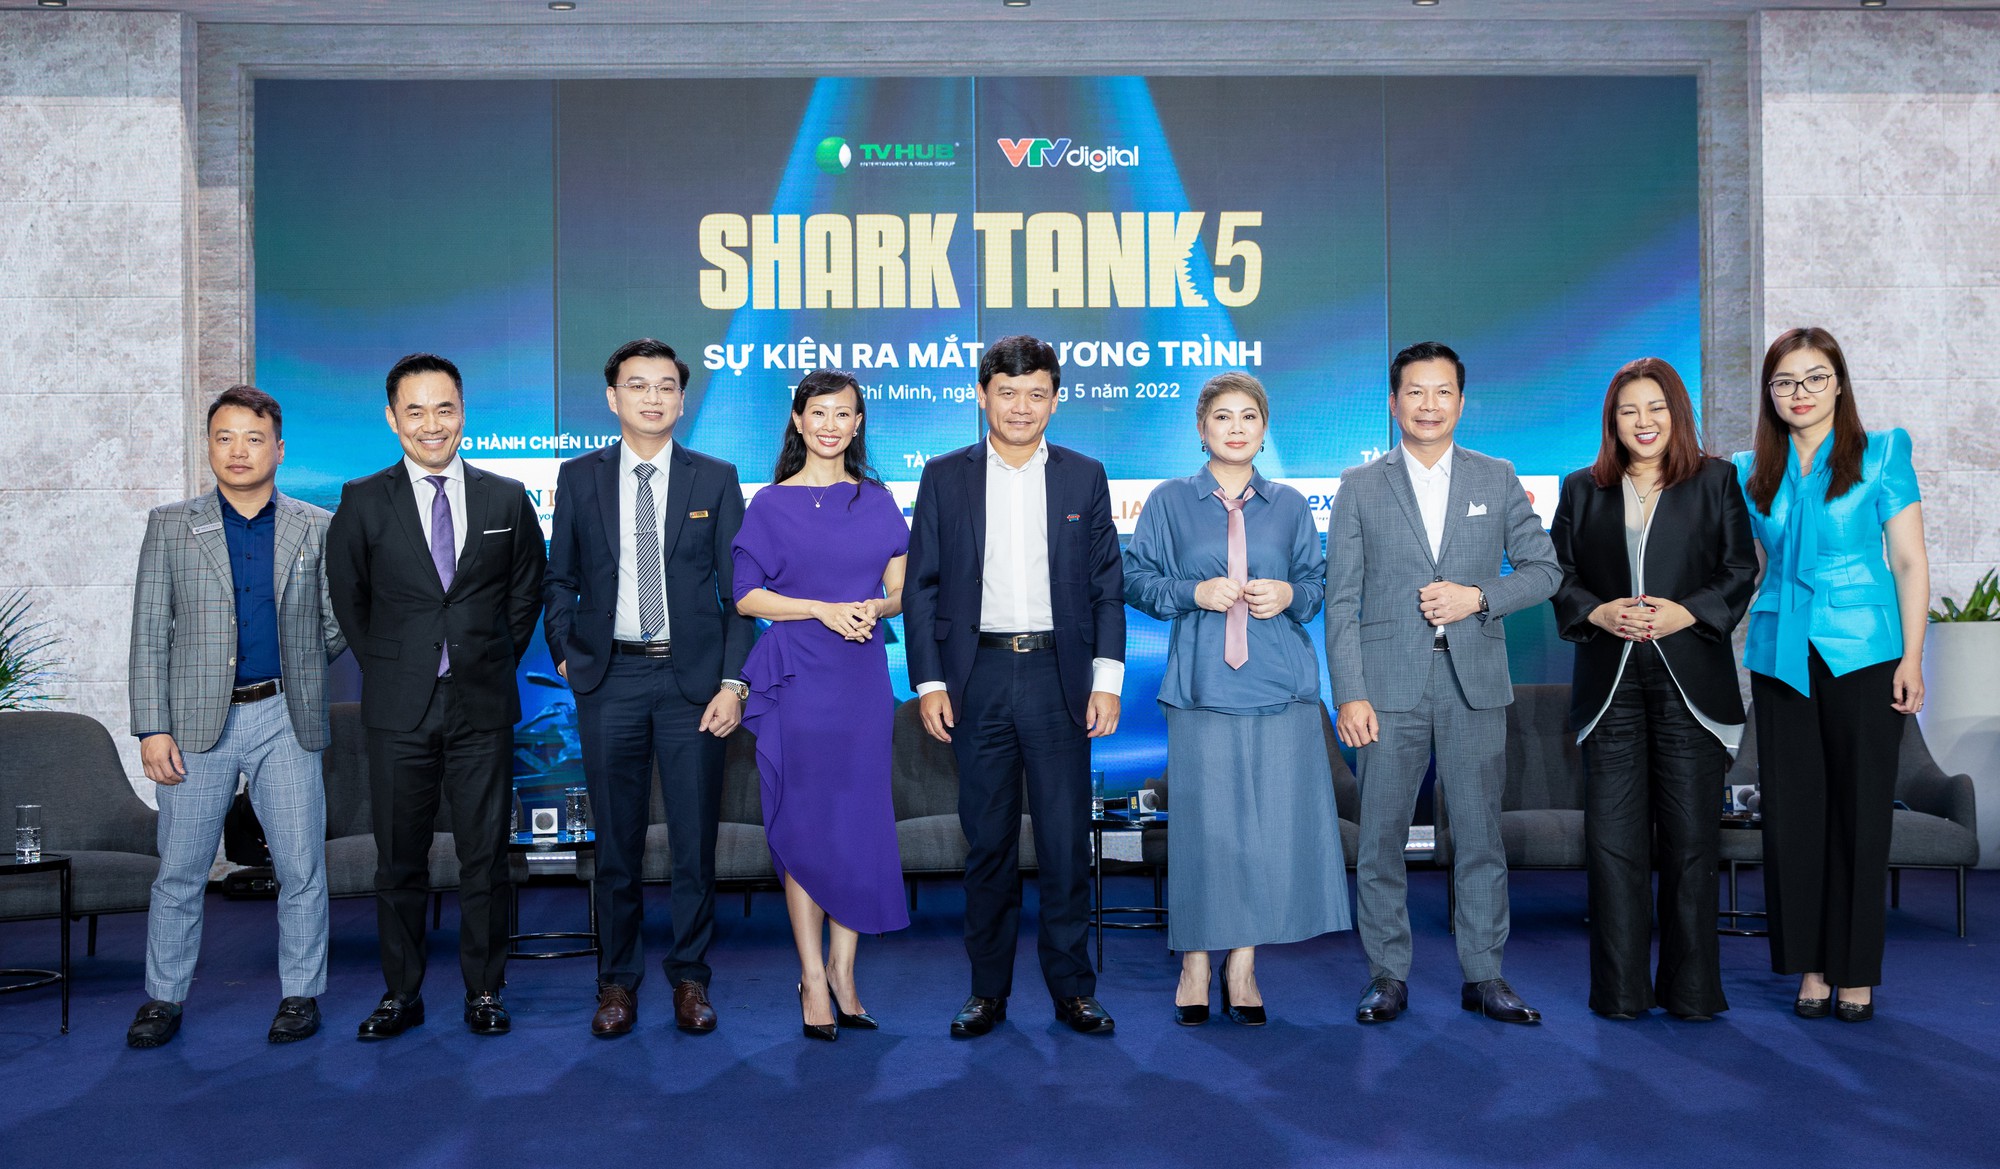 Shark Tank mùa 5 chính thức khởi động - Ảnh 1.